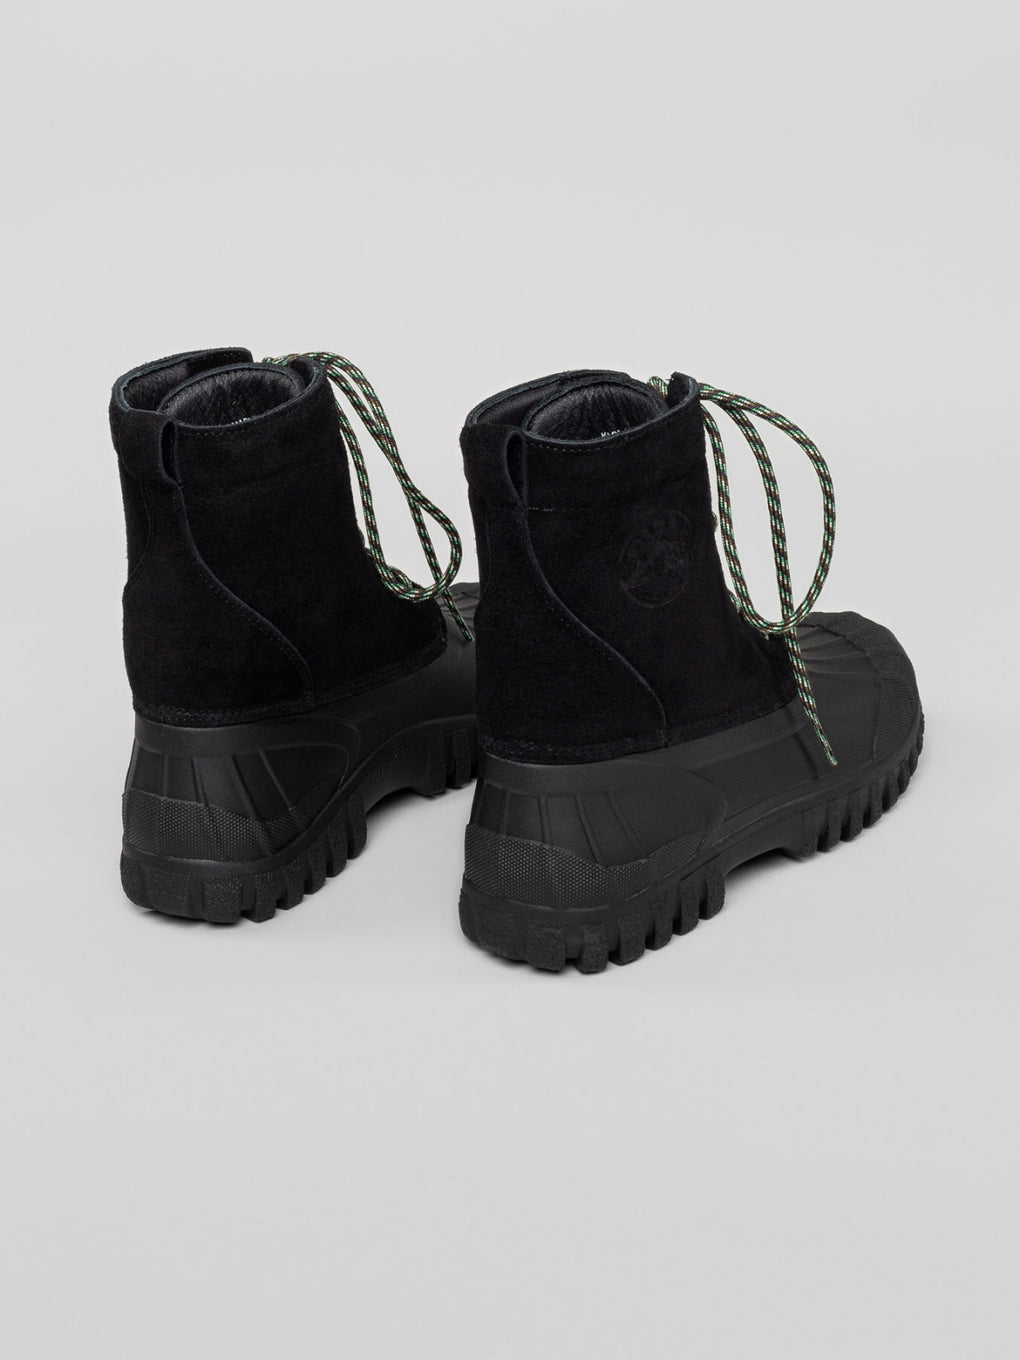 Diemme-Diemme Anatra Boot-black winter boot-suede winter boot-Diemme suede boots-Diemme black boots-Idun-St. Paul